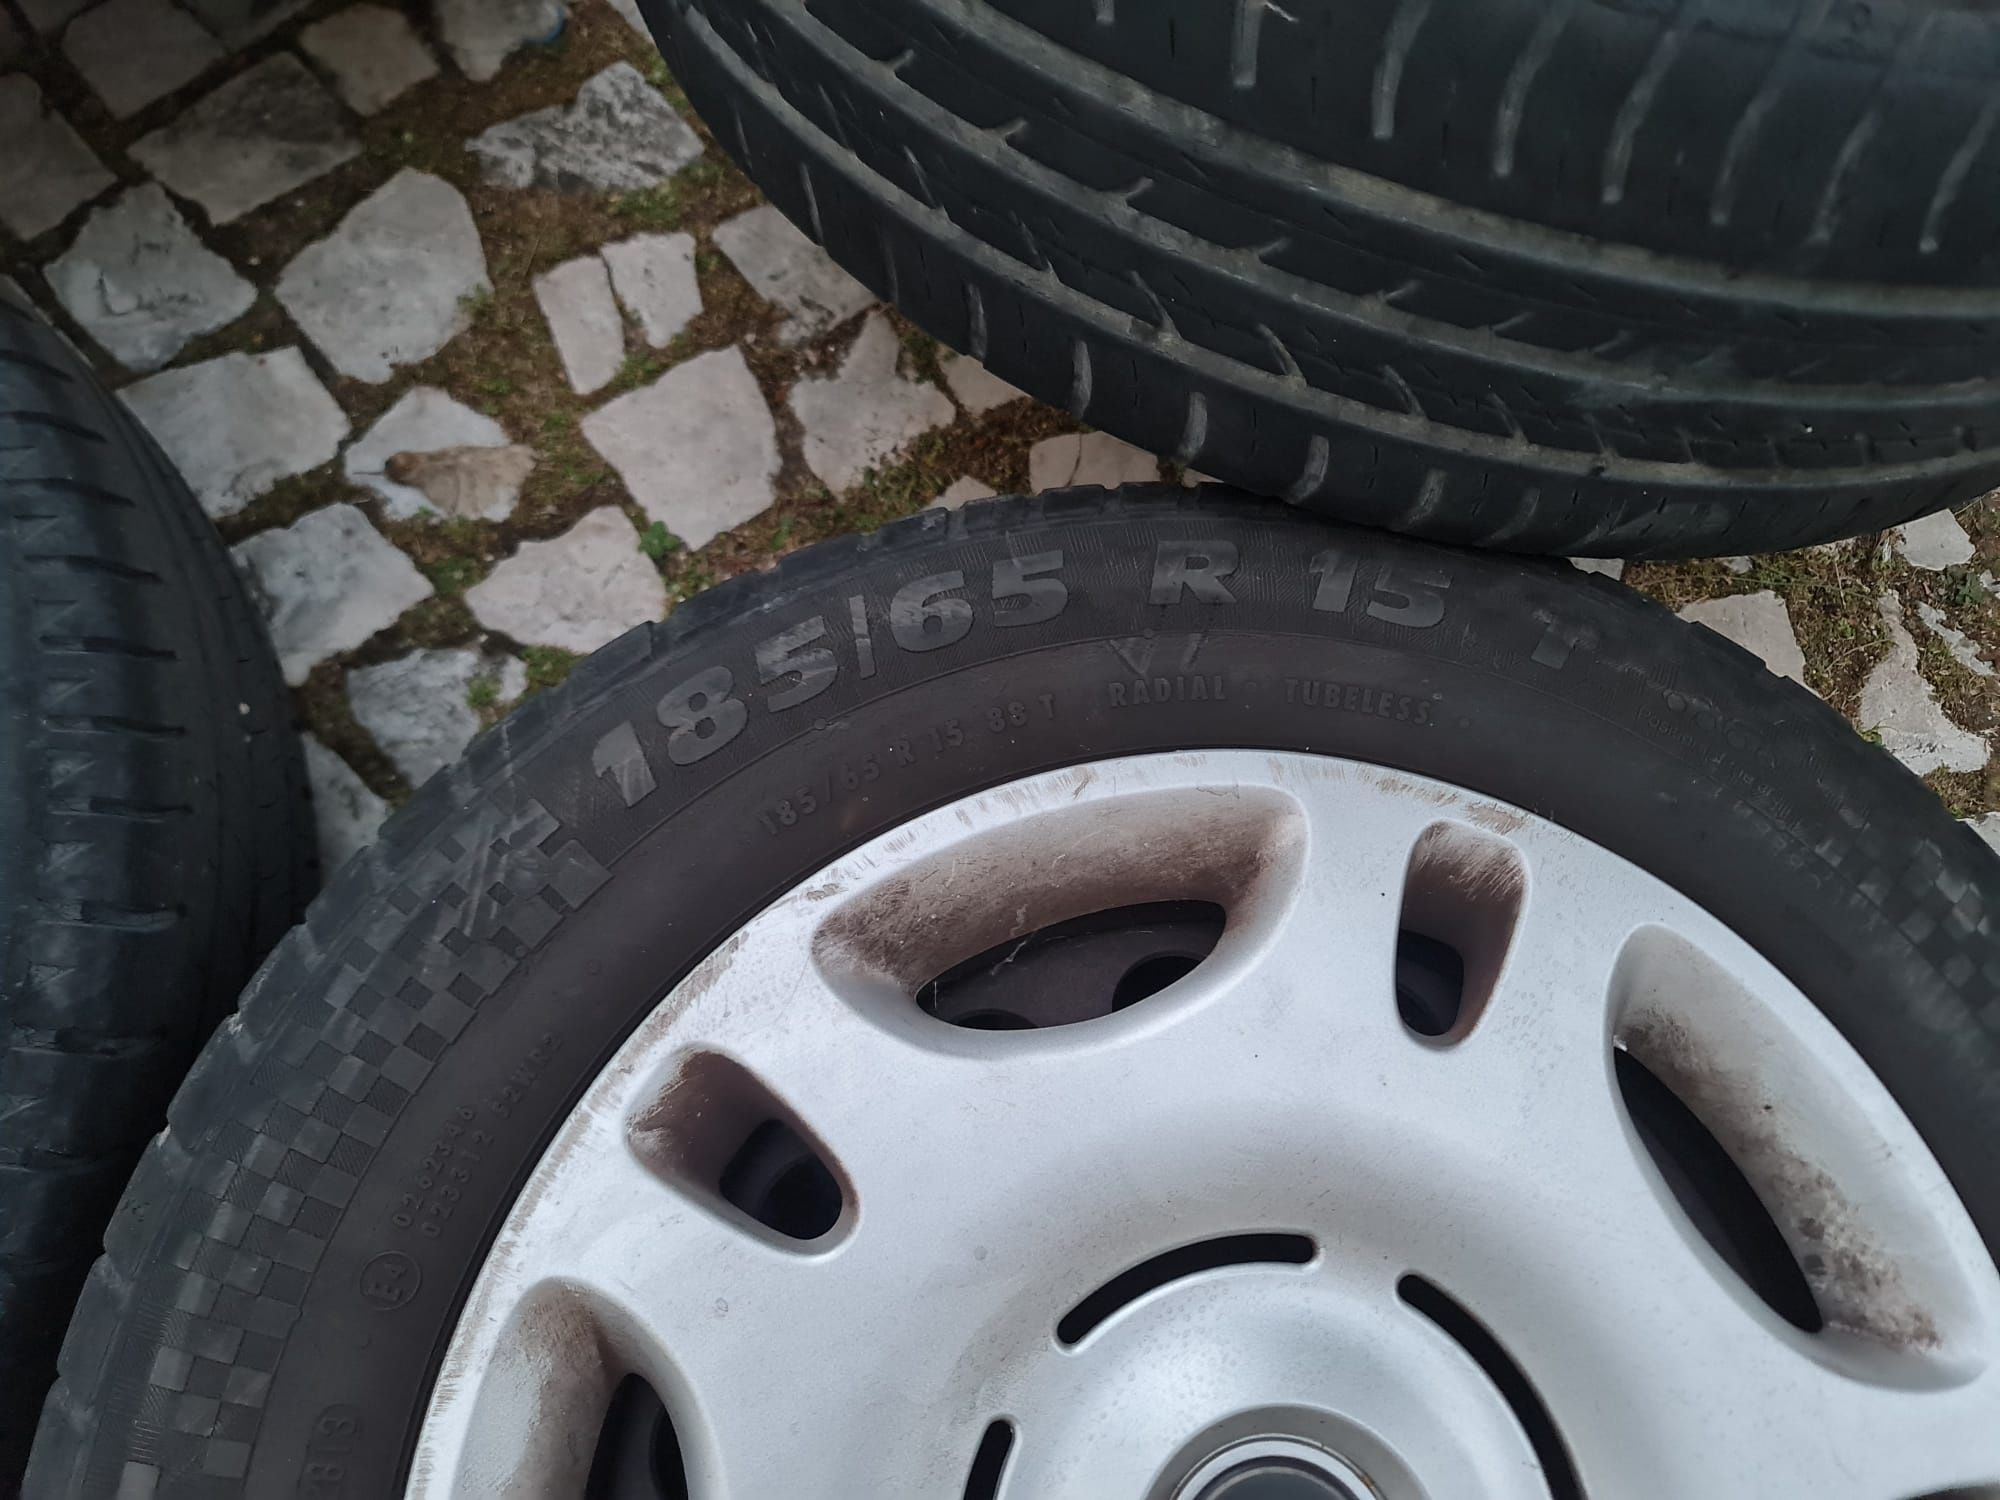 Jantes BMW com pneus